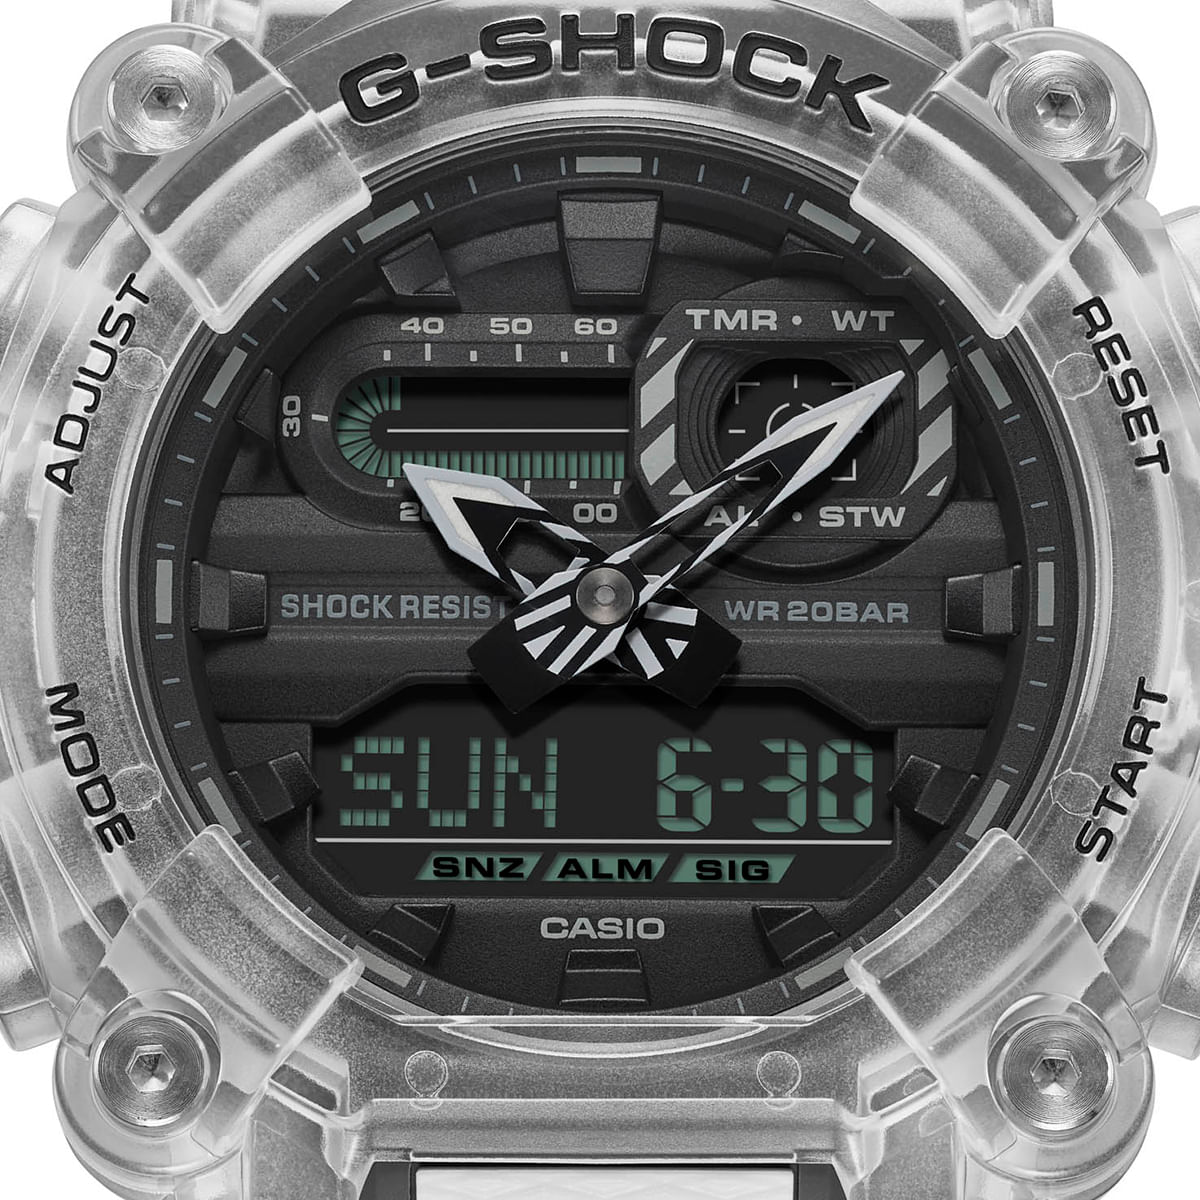 Reloj G-SHOCK GA-900SKL-7A Resina Hombre Transparente - Btime